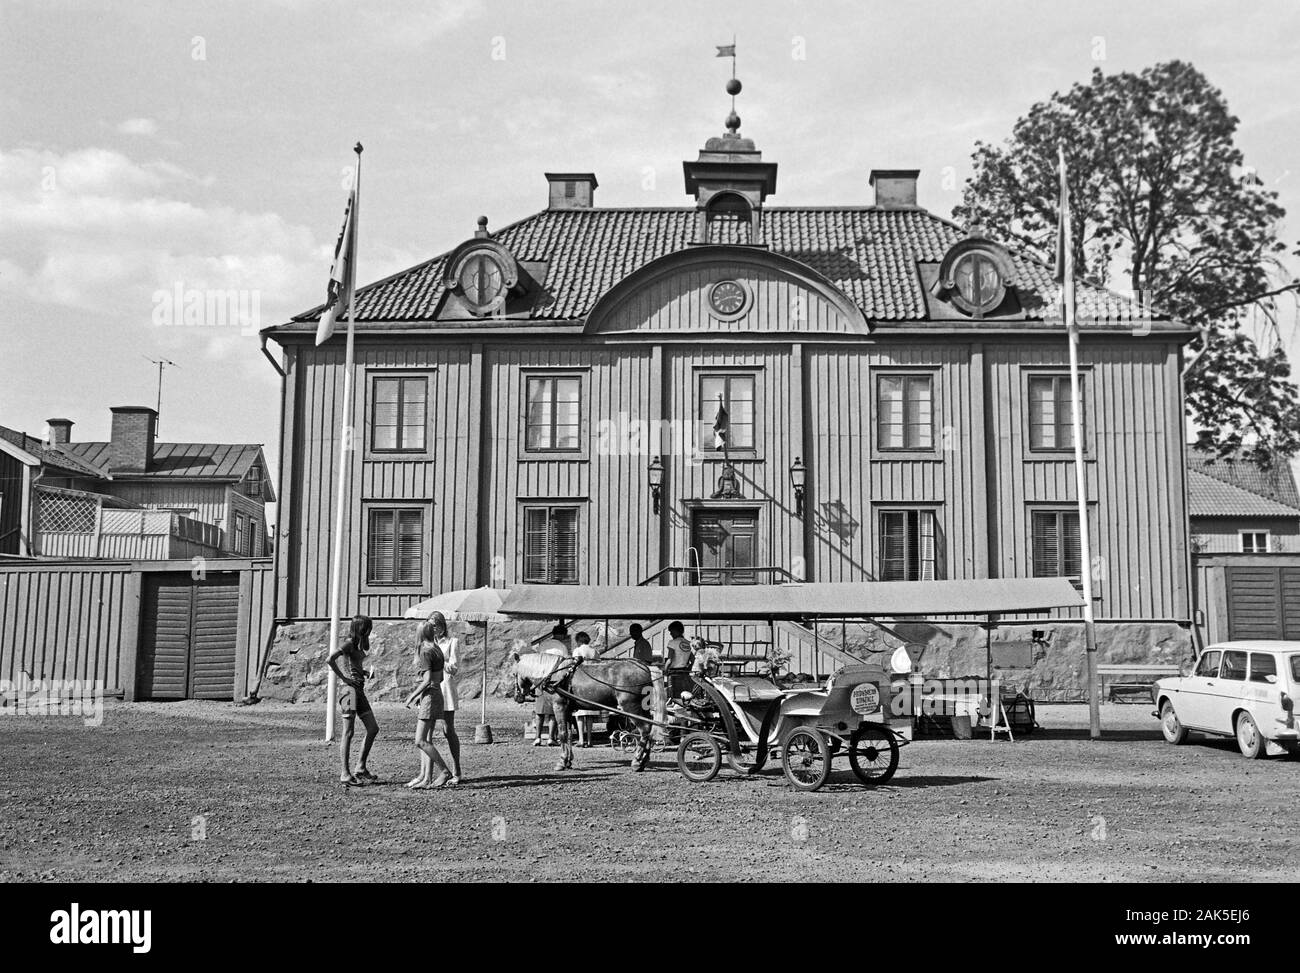 Il Rathaus von Mariefred mit Marktstand und Pferdedroschke, 1969. Municipio di Mariefred con un mercato di stallo e di una carrozza trainata da cavalli, 1969. Foto Stock